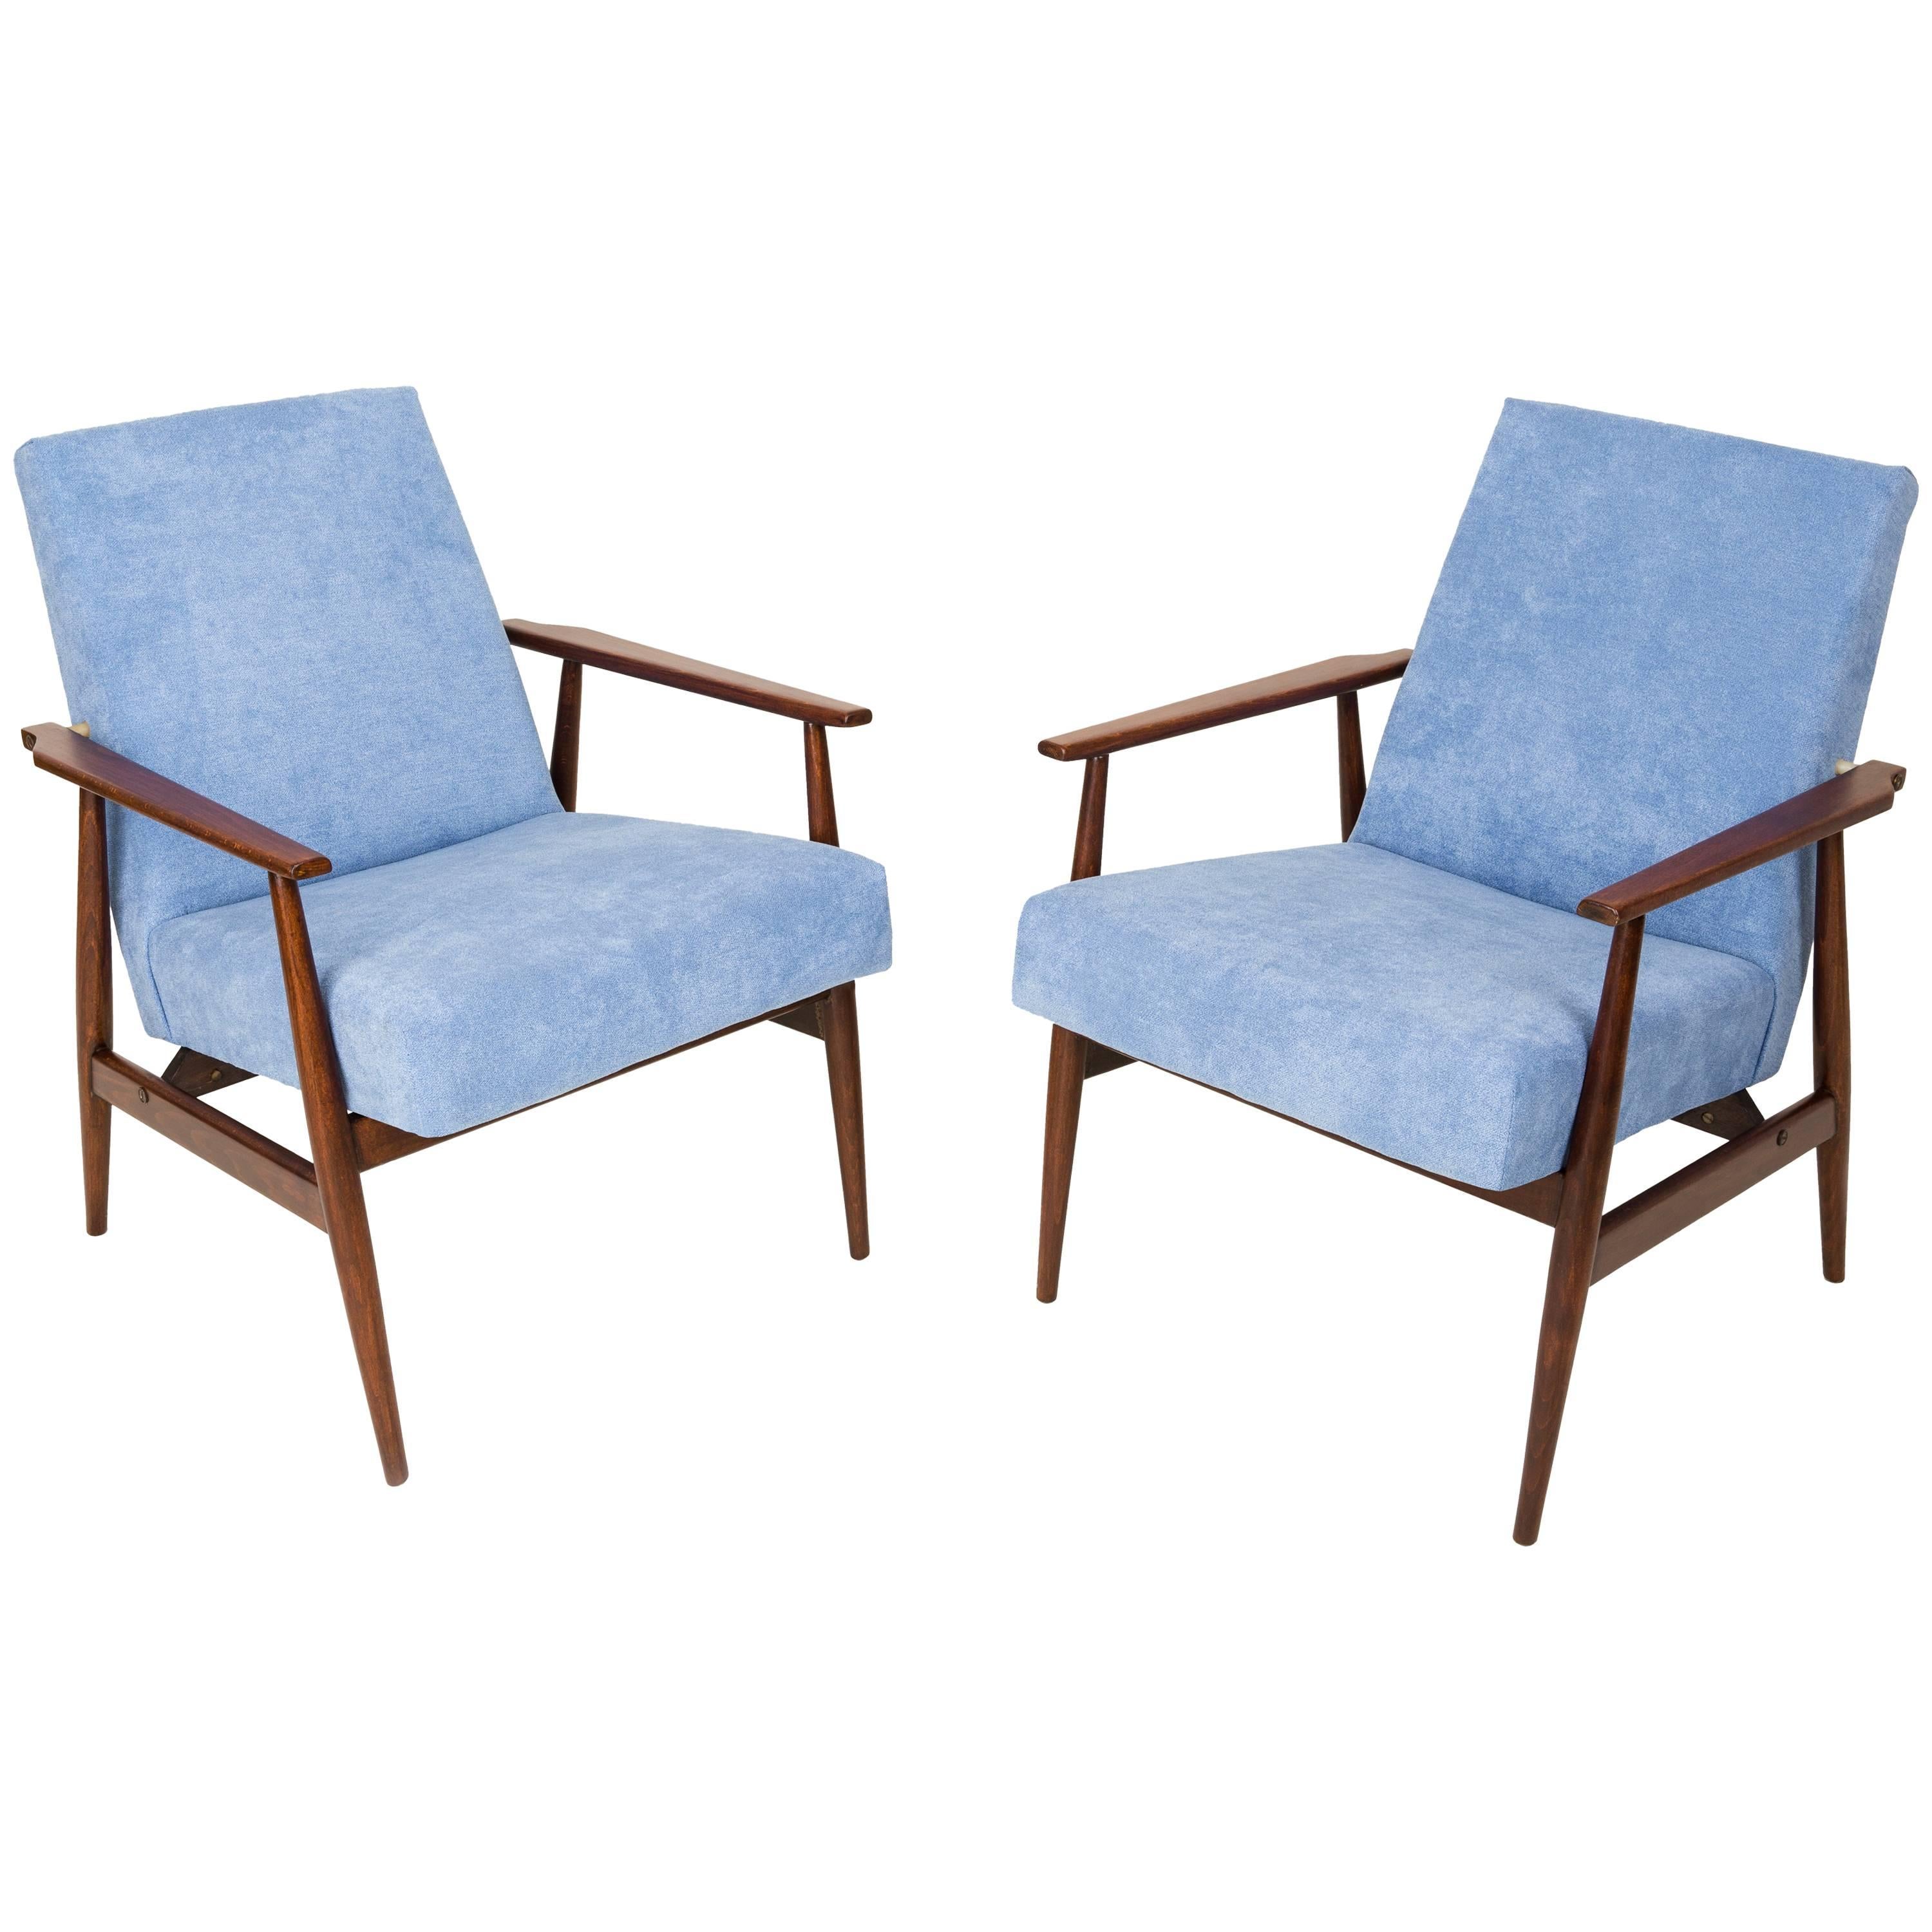 Paire de fauteuils en dante bleu pâle du XXe siècle, H. Lis, années 1960